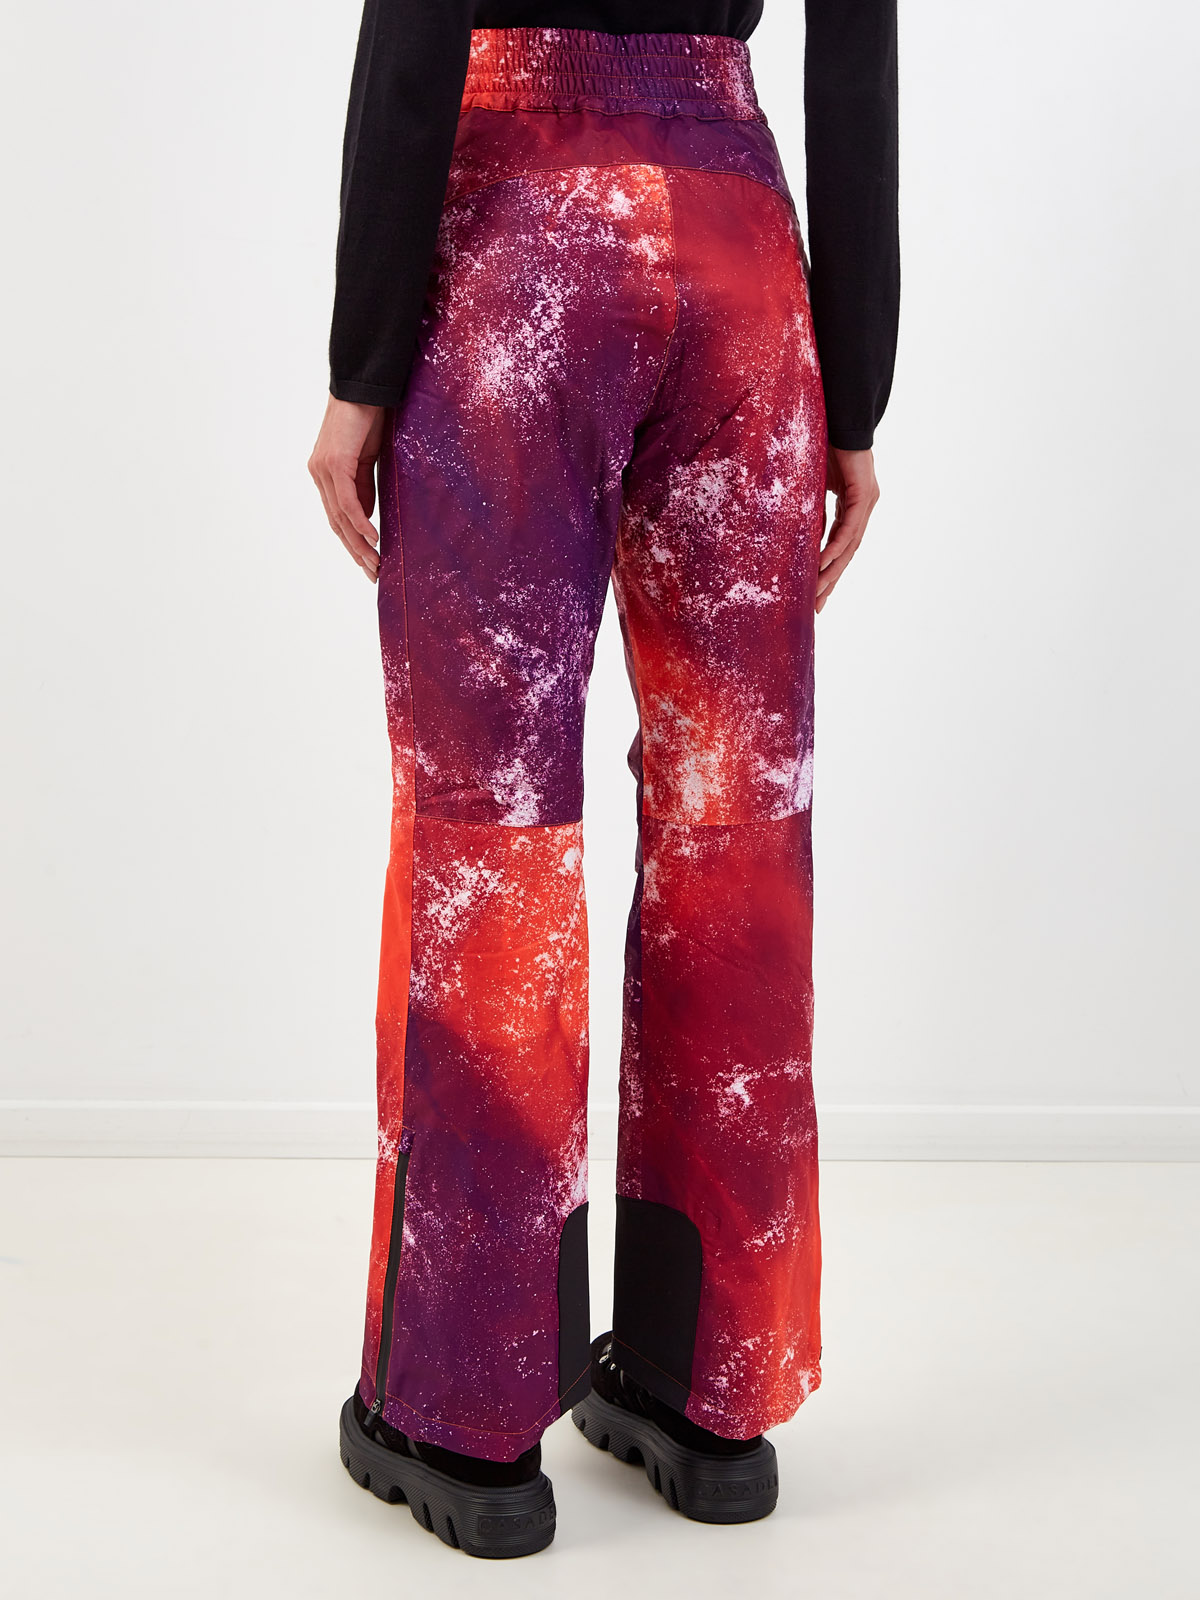 Горнолыжные брюки Blanche из трехслойного нейлона softshell PARAJUMPERS, цвет мульти, размер S;M;L;XL - фото 4